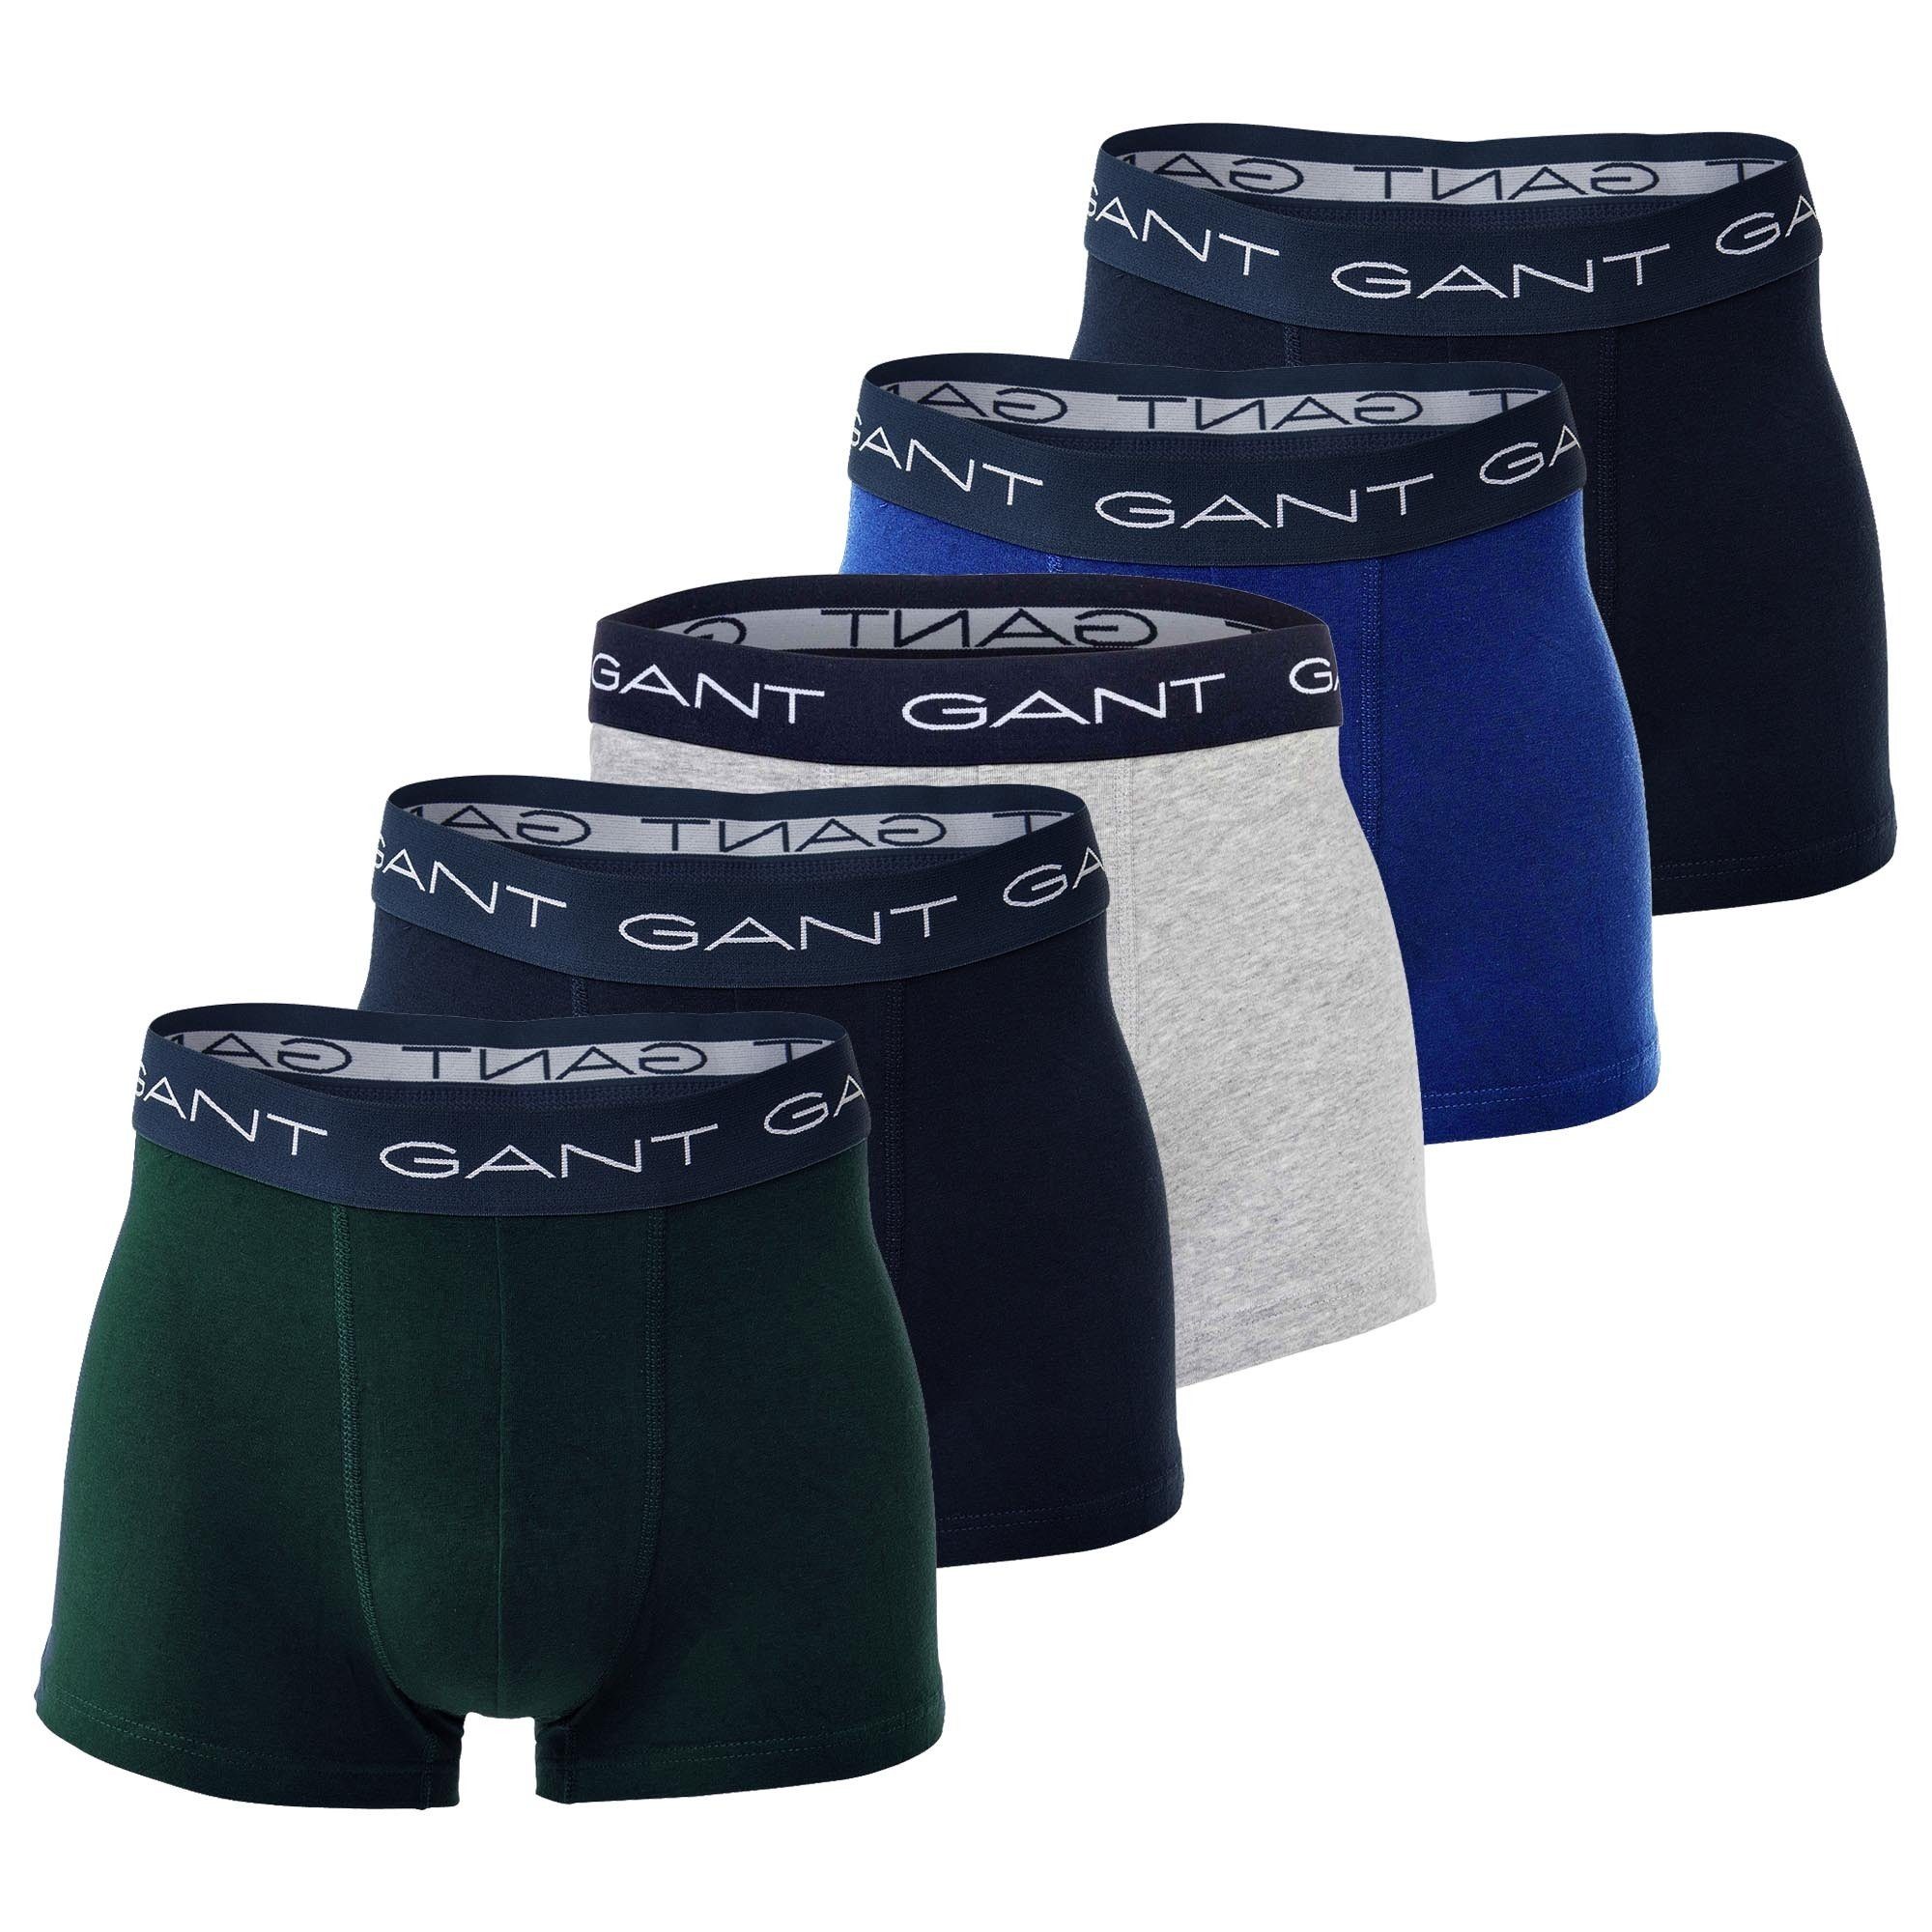 Gant Boxer Herren Boxershorts, 5er Pack - Basic Trunks Blau/Grün/Grau